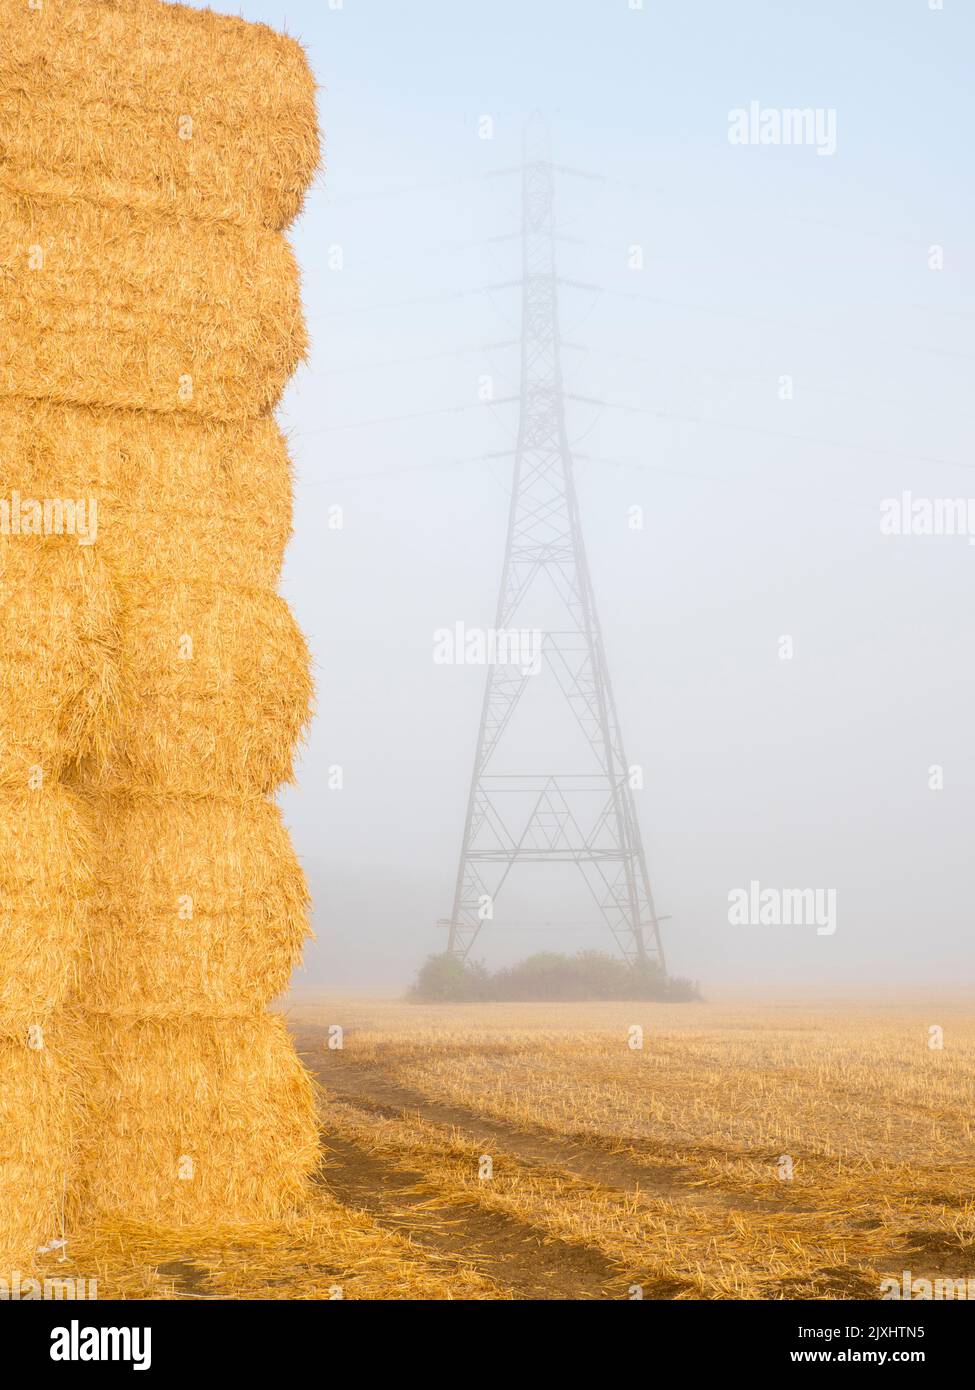 Es justo después de la cosecha. Visto en un campo de maíz justo fuera de mi pueblo natal de Radley, Oxfordshire, este gigante pajar parece haber trascendido Foto de stock